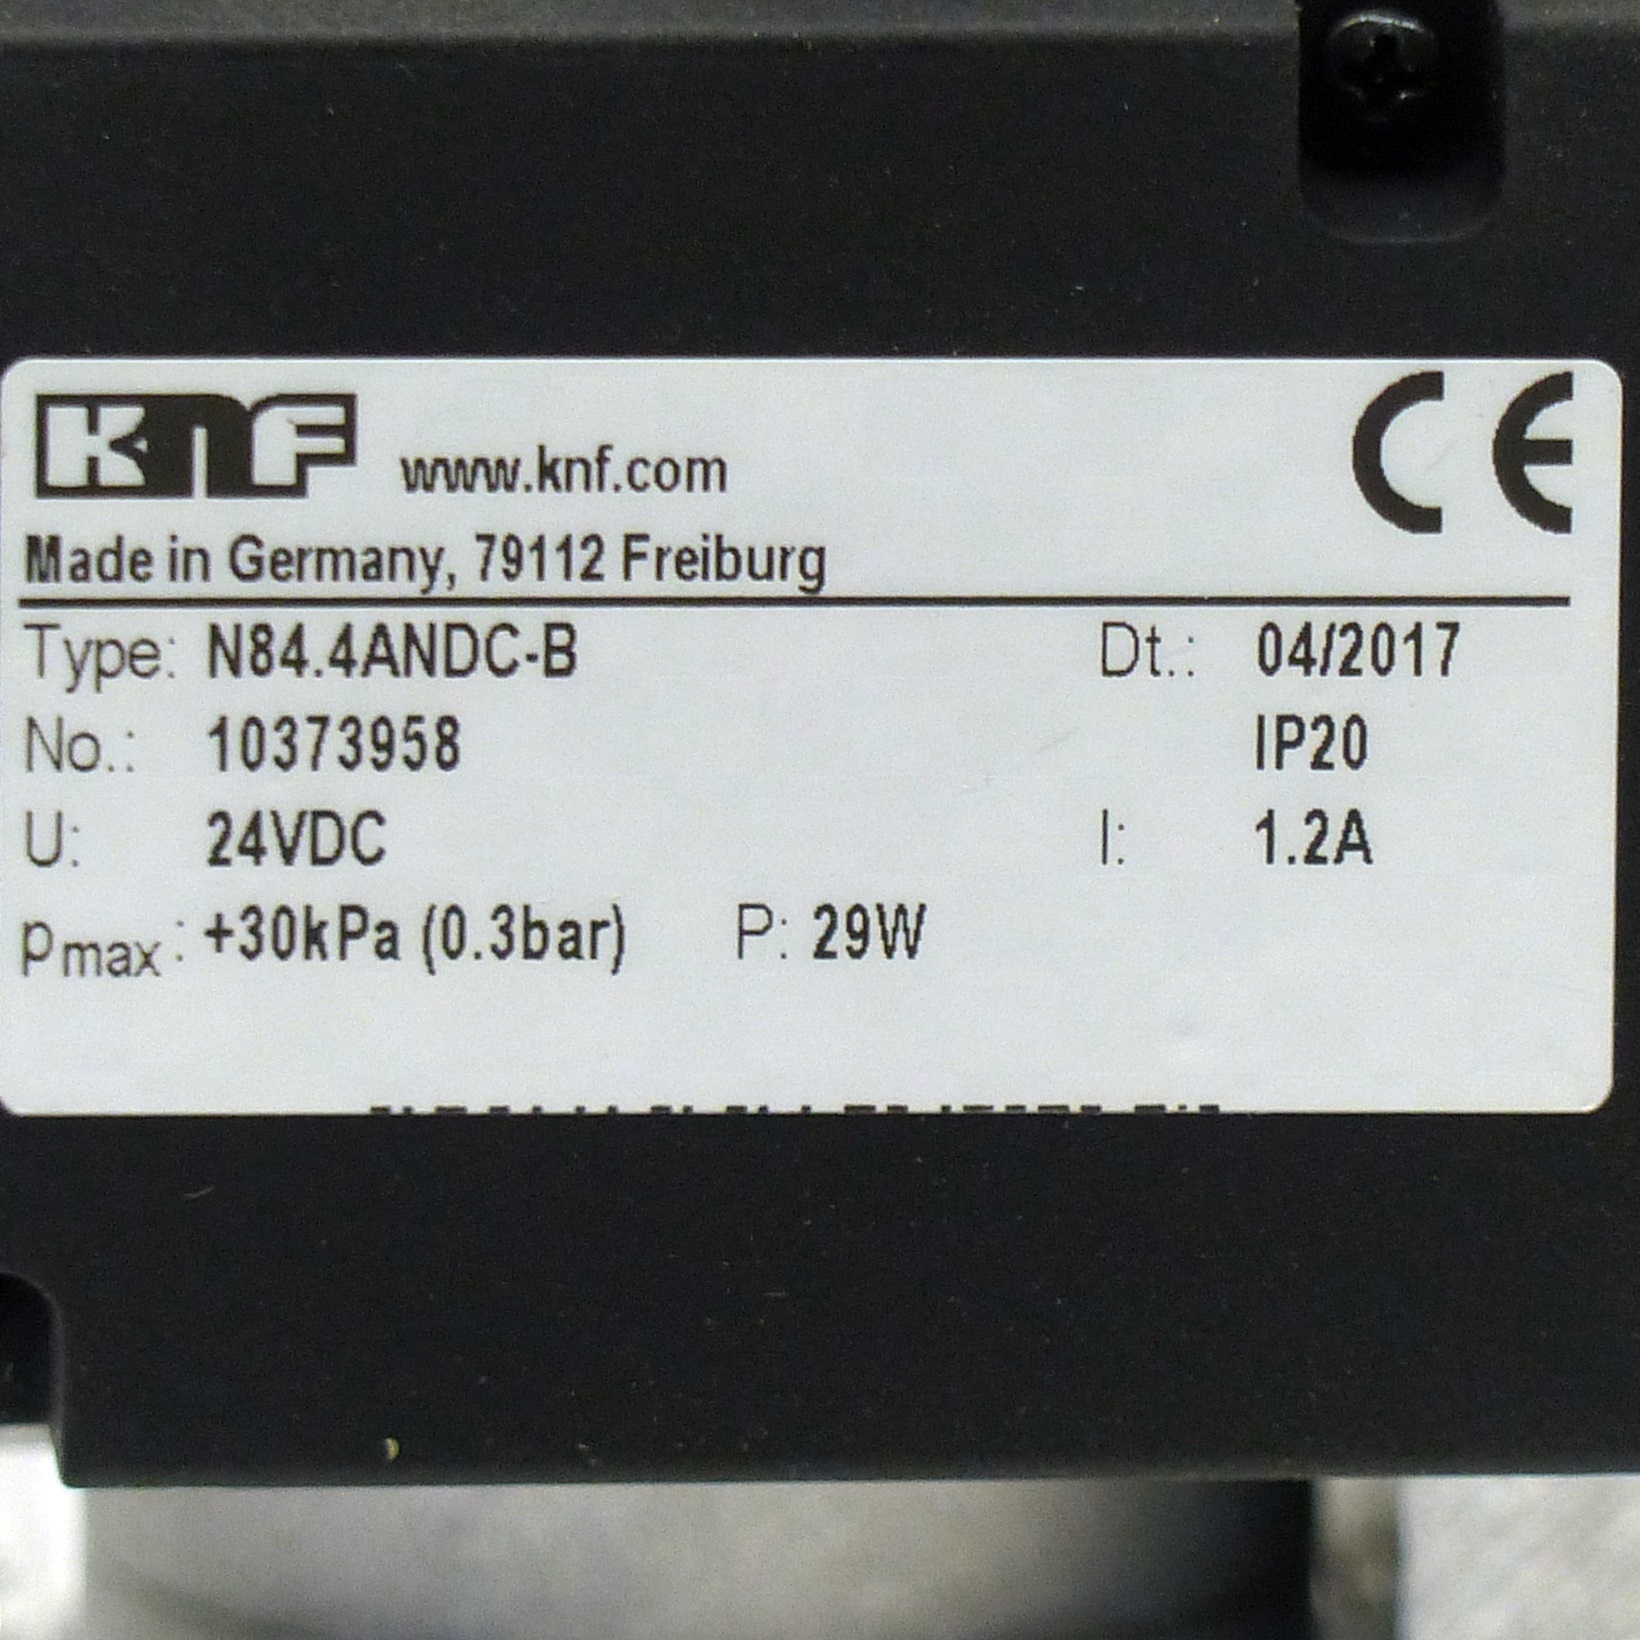 KNF LABOPORT Mini-Membran-Vakuumpumpe N 816.1.2 mit Feinregulierkopf und  Vakuummeter, 681,01